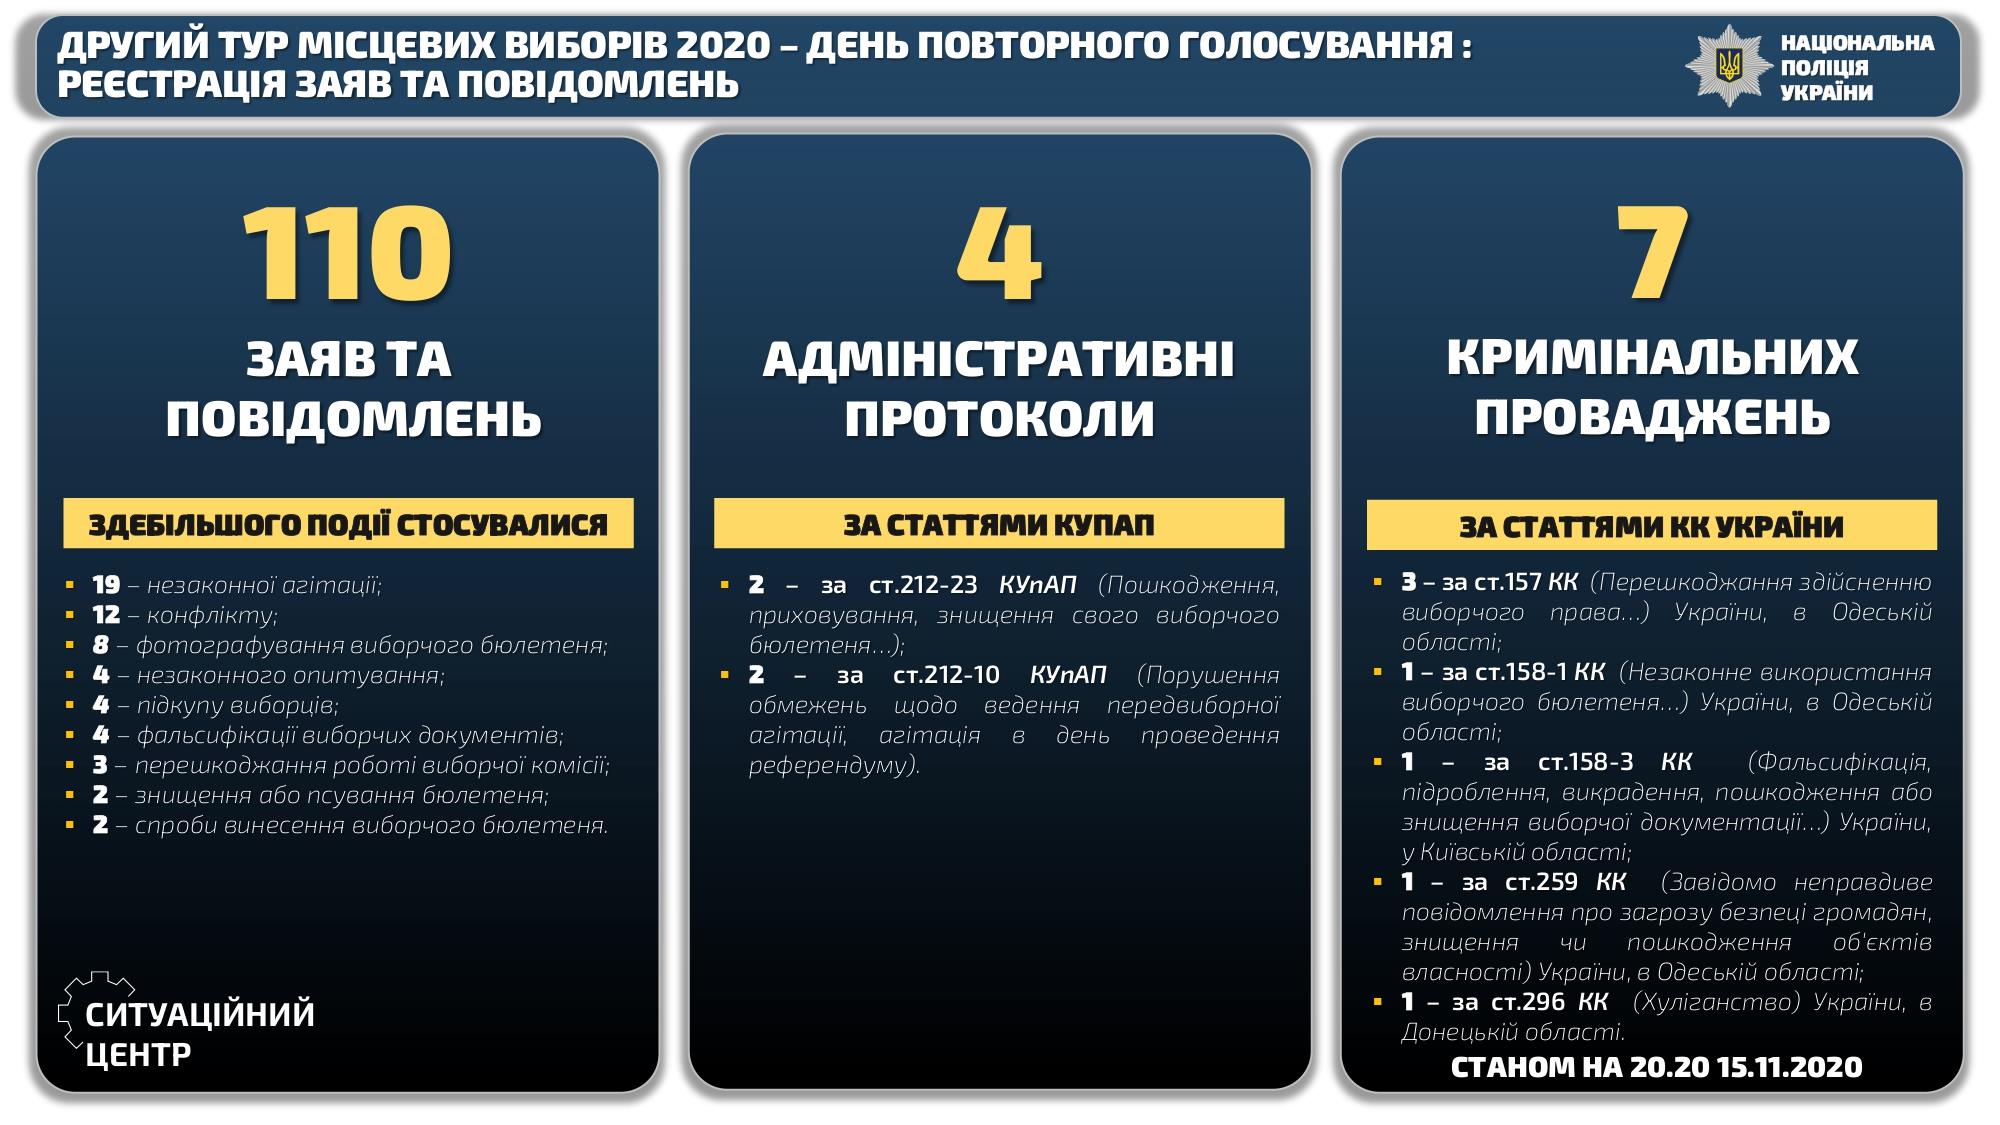 Одесса стала рекордсменом по нарушениям избирательного процесса на выборах мэра. Скриншот: Нацполиция